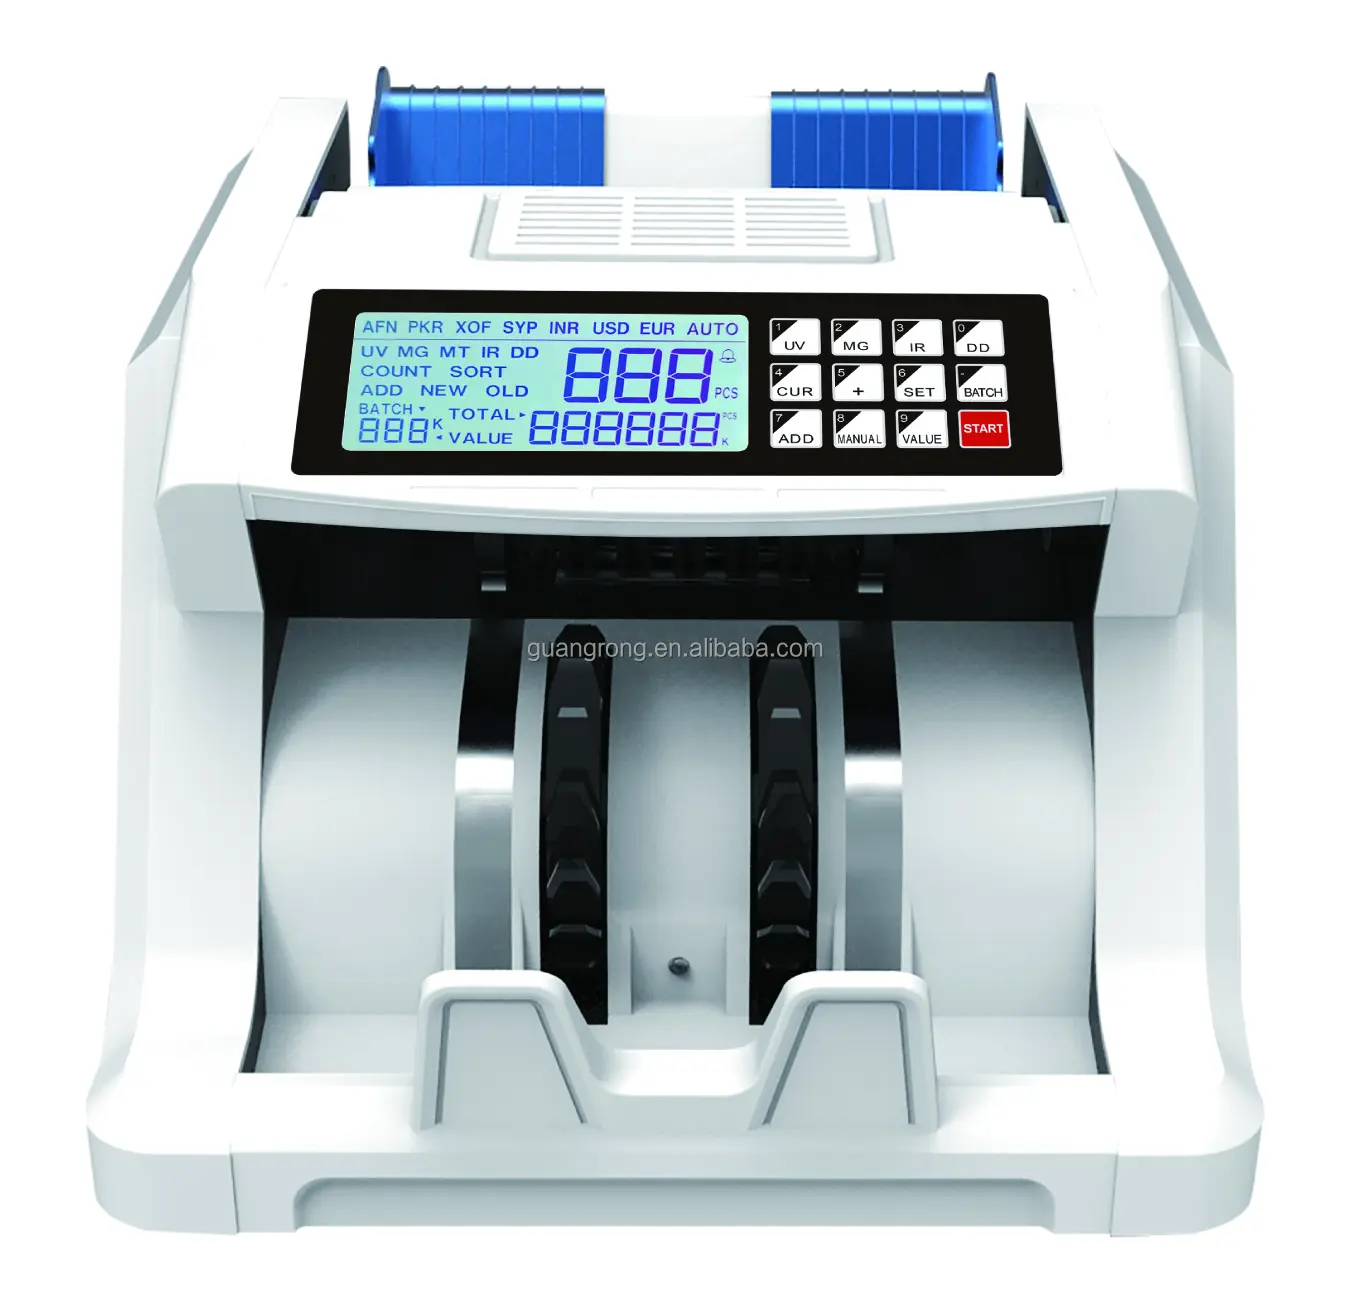 Directo de fábrica Multi moneda Bill Note Machine para recuento de bancos con gran pantalla LCD UV/MG